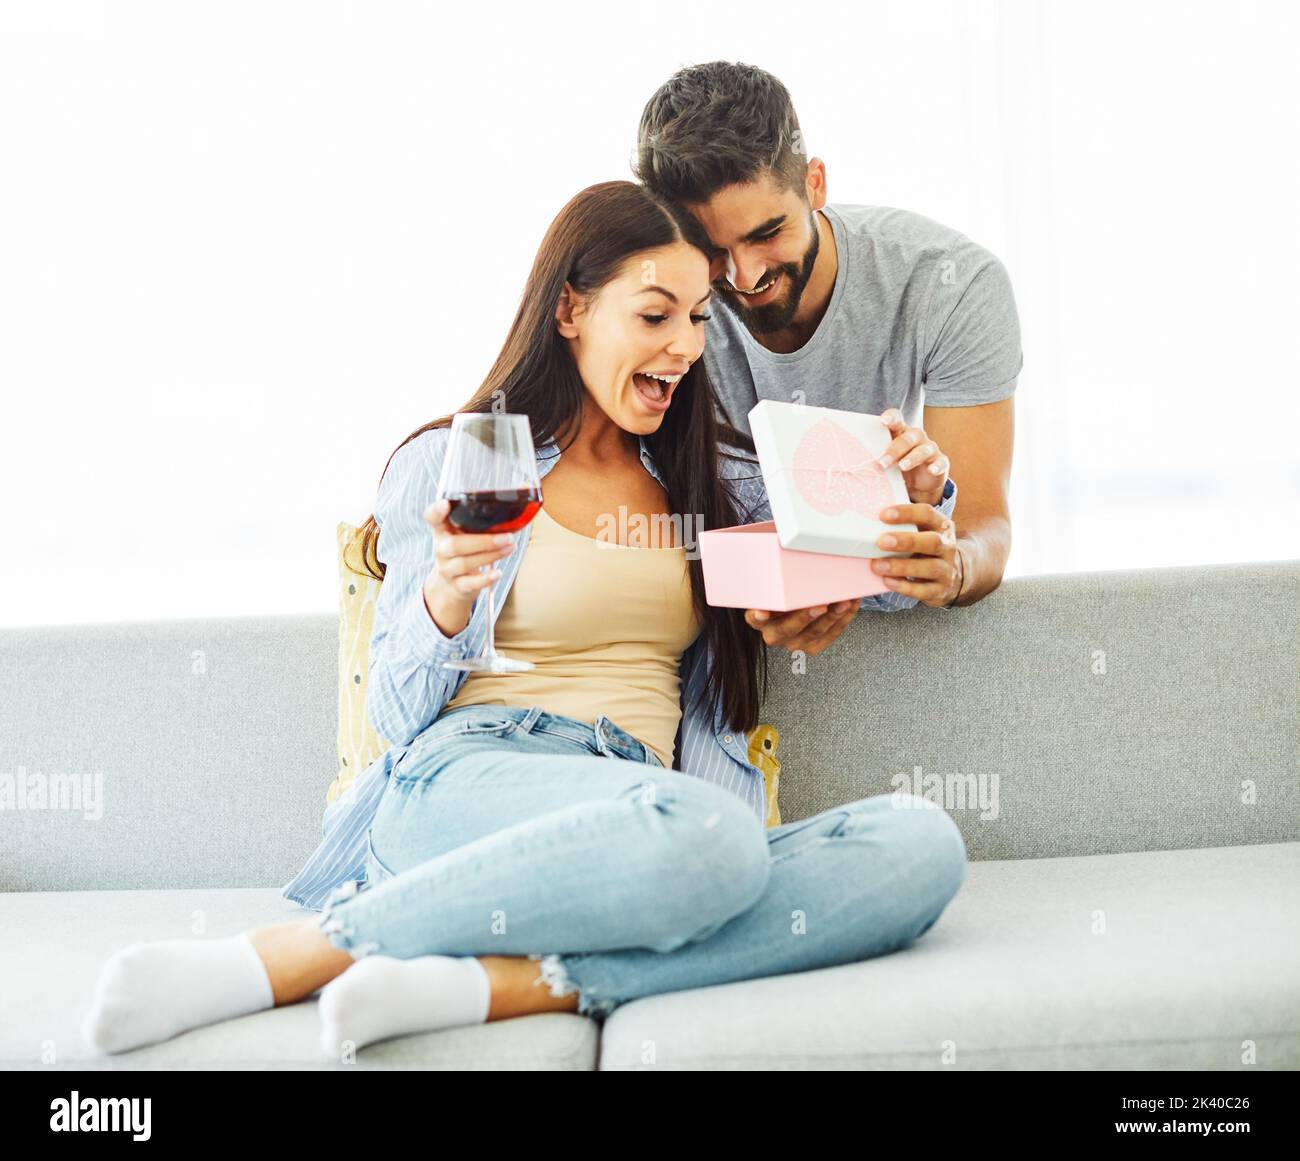 Geschenk Frau Mann Paar glücklich Liebe Glück präsent Überraschung romantisch lächelnd zusammen Box Freundin Stockfoto